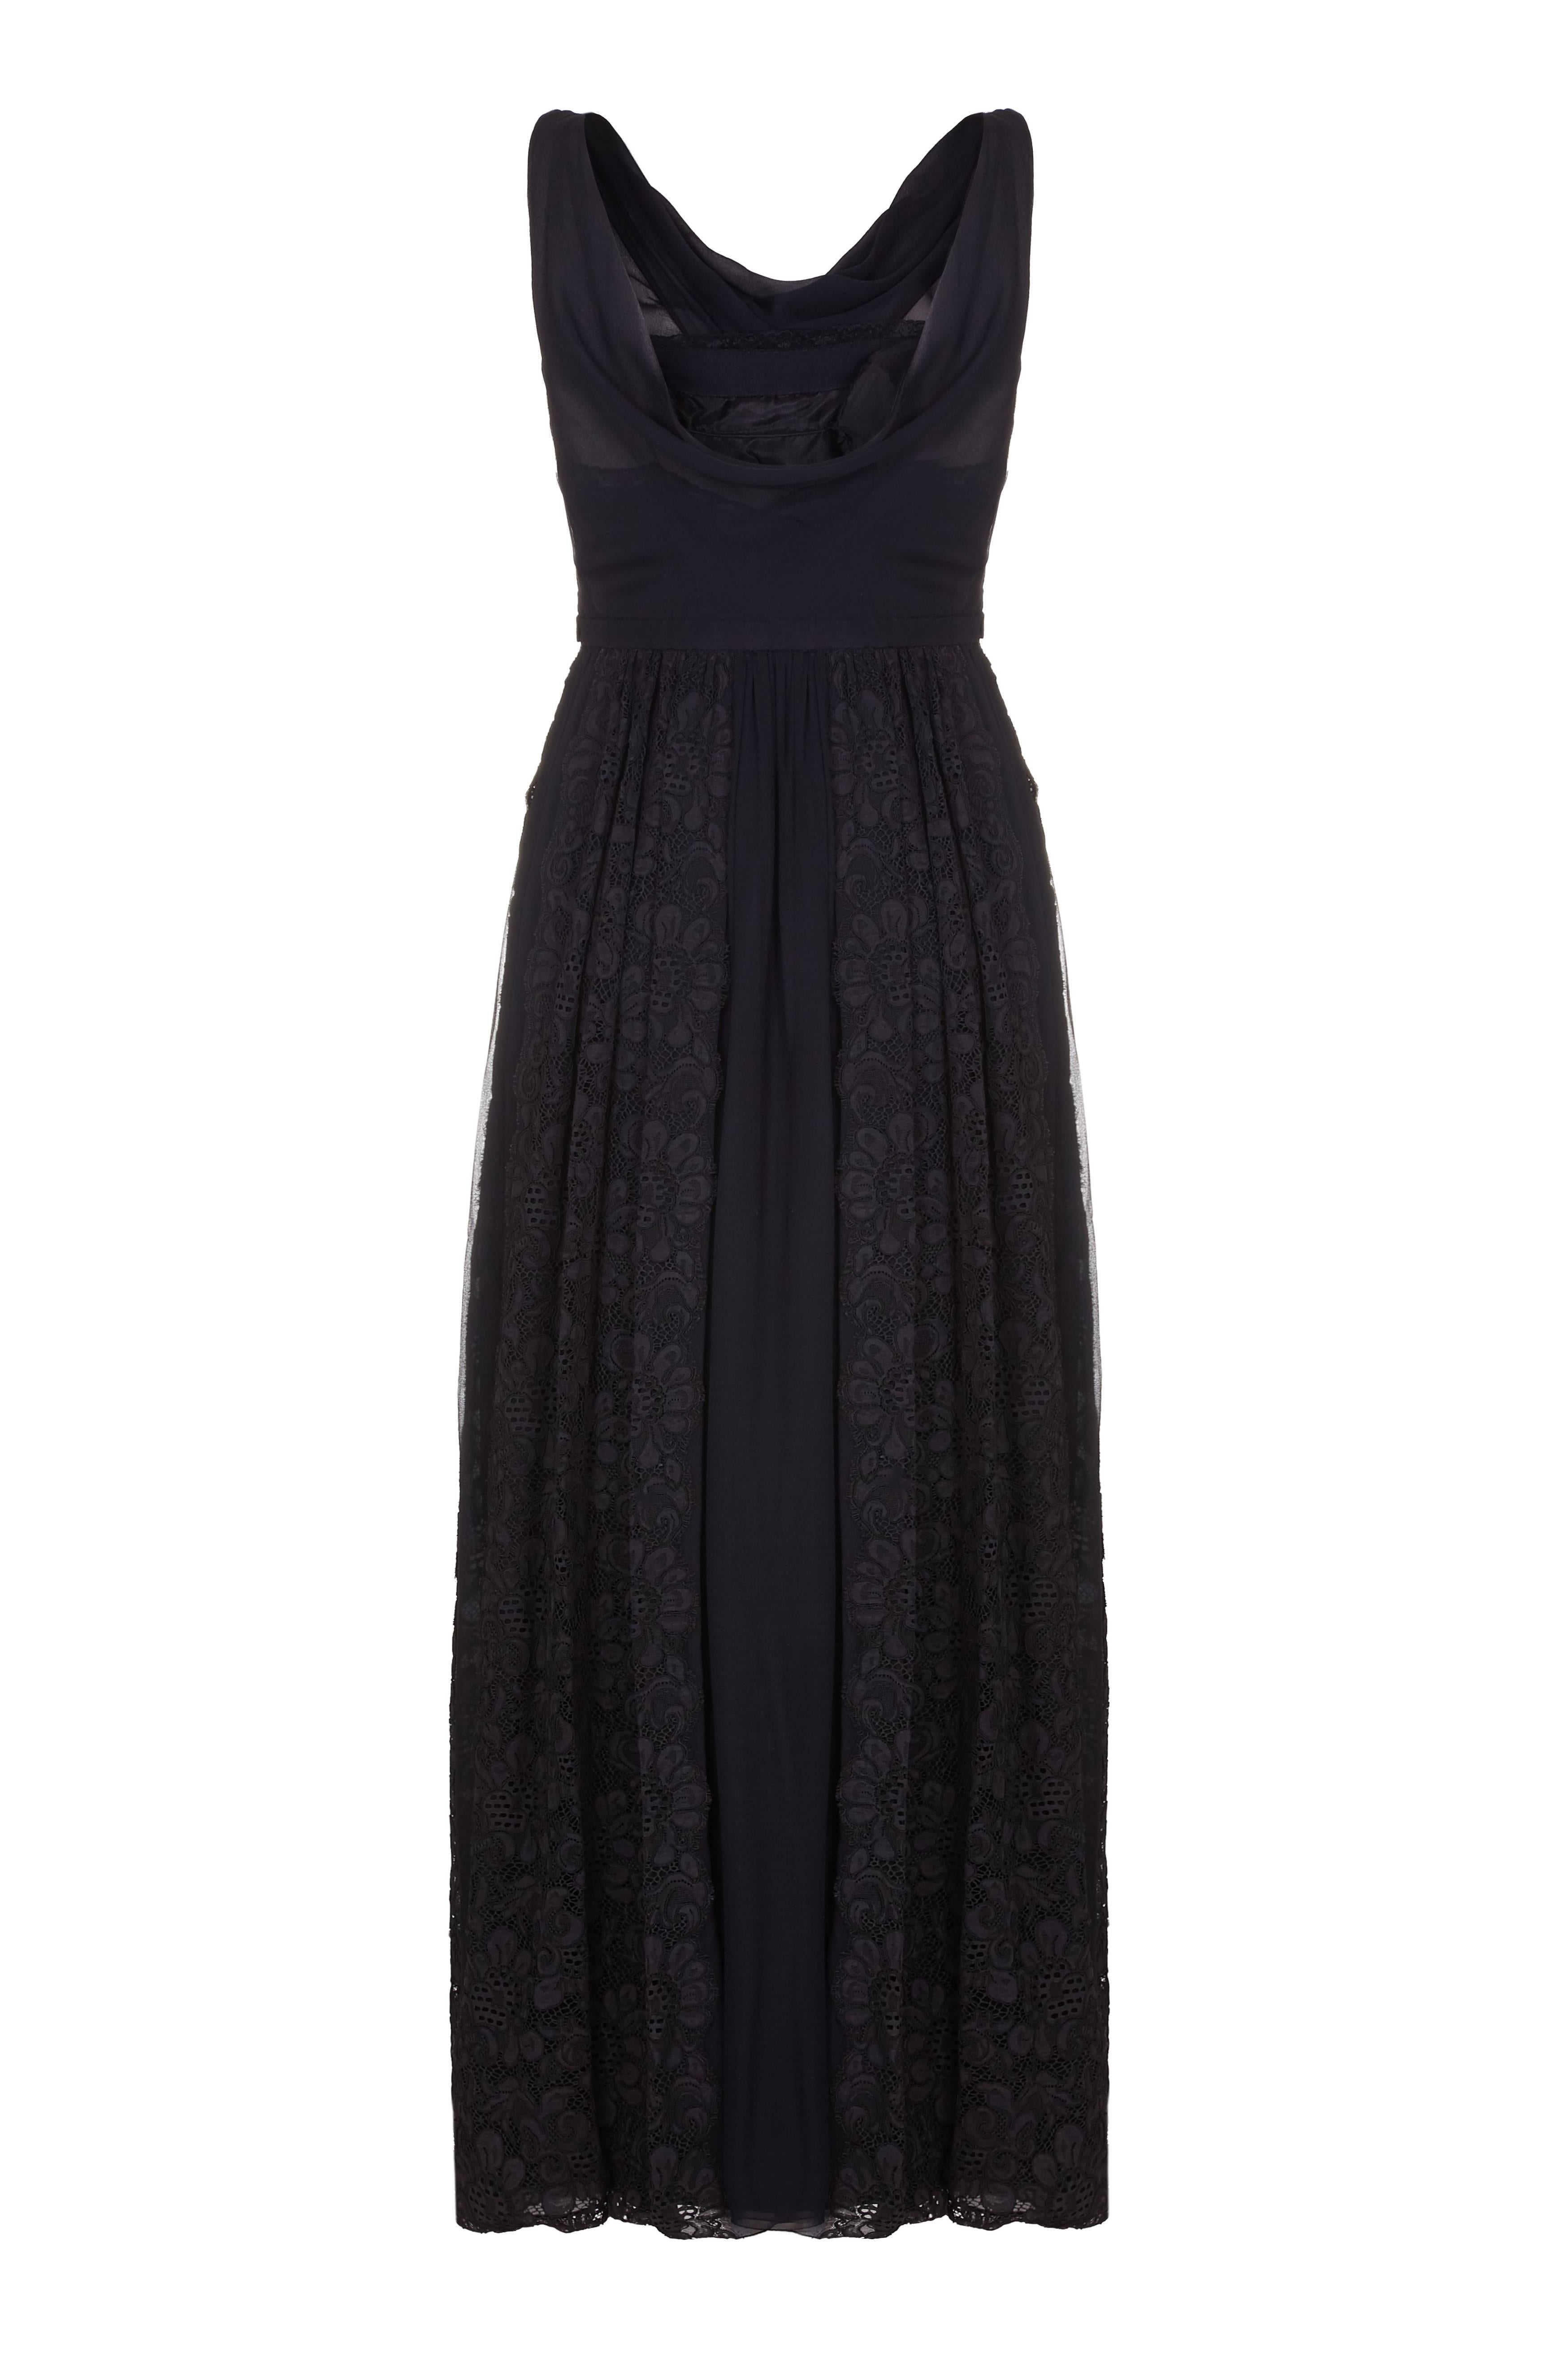 Cette robe du soir en soie noire et dentelle des années 1950 de Mainbocher est d'une qualité exceptionnelle et présente des détails vraiment élégants. Le corsage est entièrement doublé et le buste est légèrement paddé pour apporter un soutien